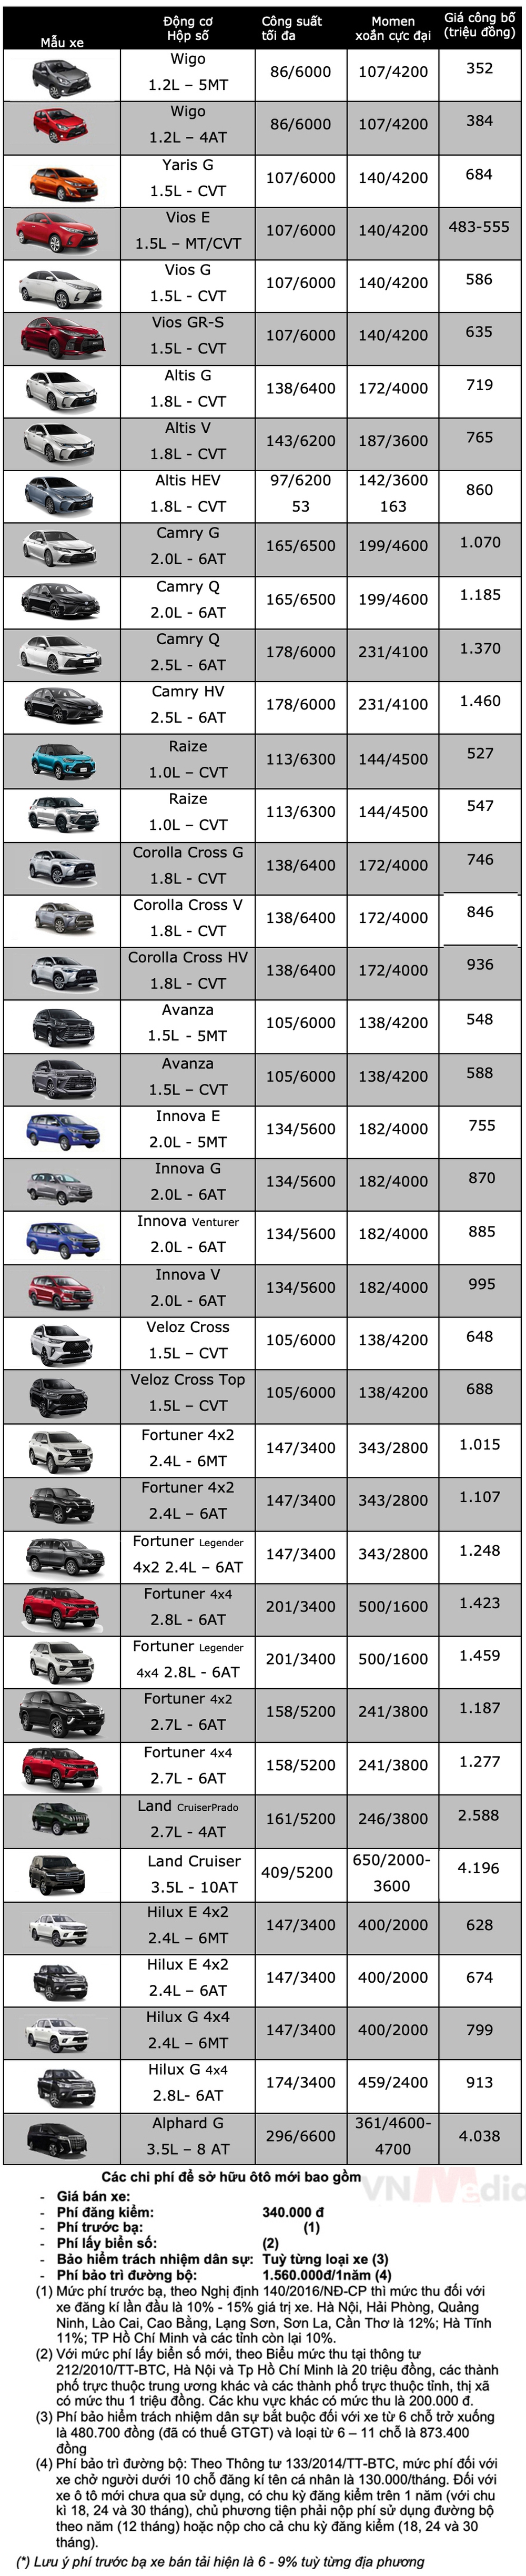 Bảng giá xe Toyota tháng 4: Veloz Cross xả hàng, ưu đãi tới 50 triệu đồng - Ảnh 2.